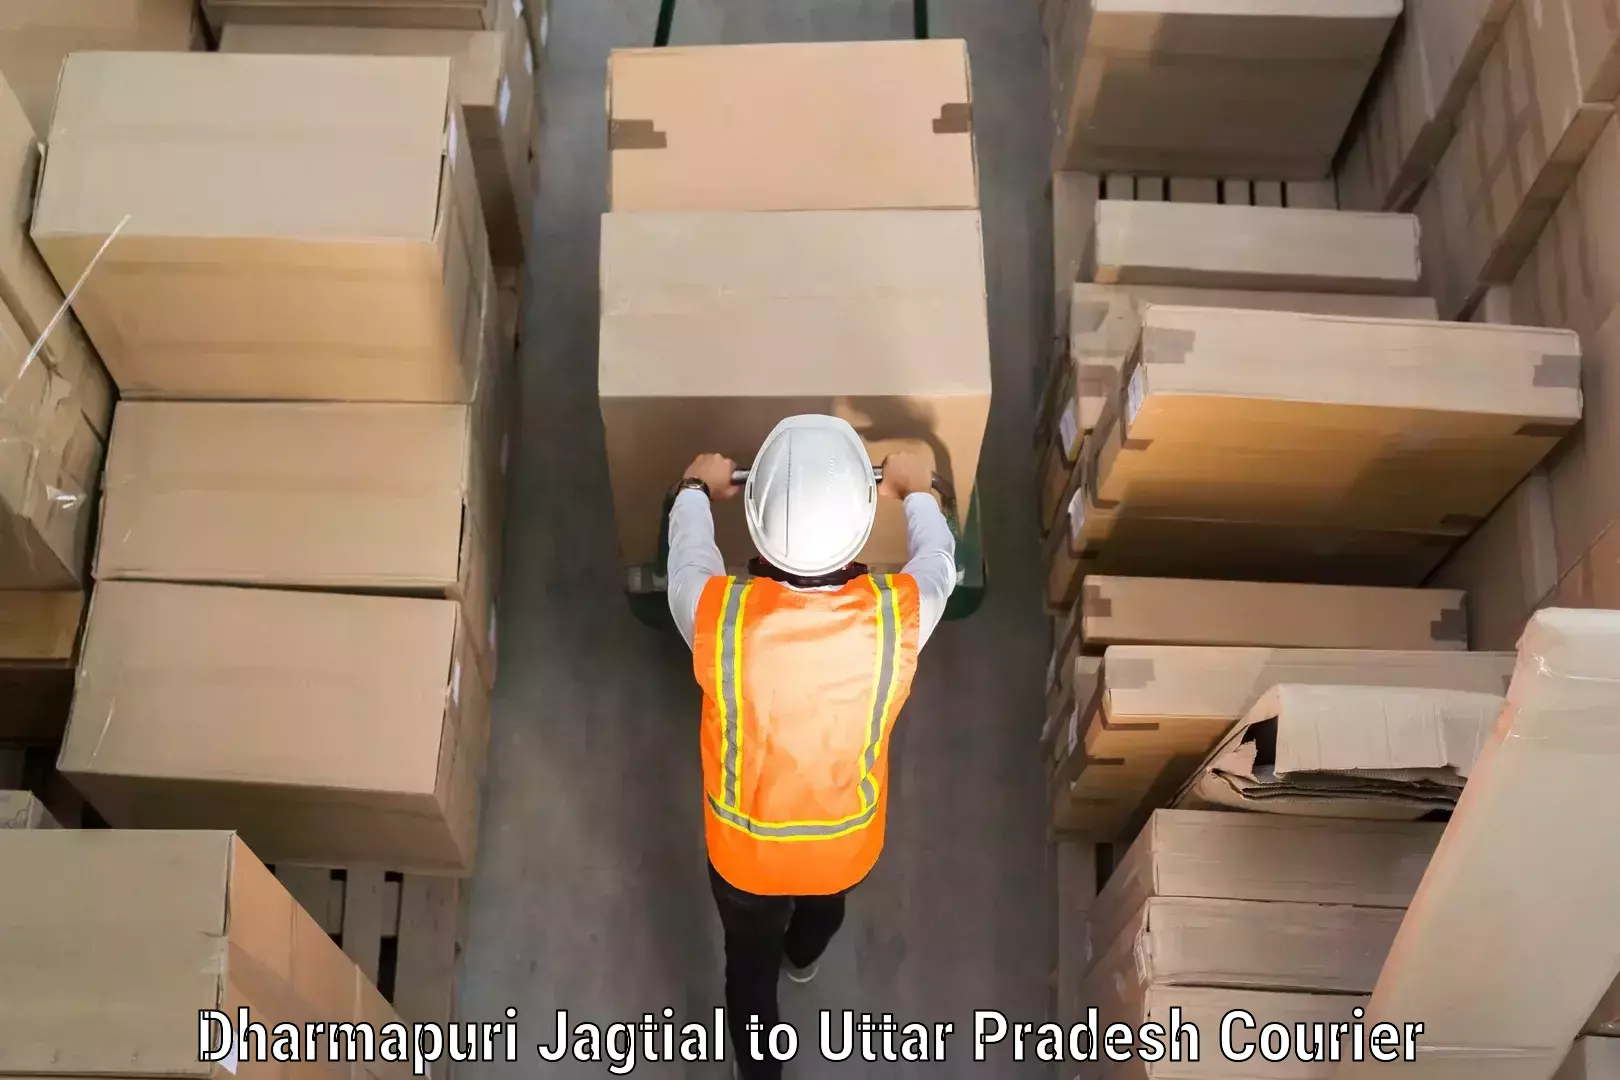 Baggage shipping service Dharmapuri Jagtial to Anpara